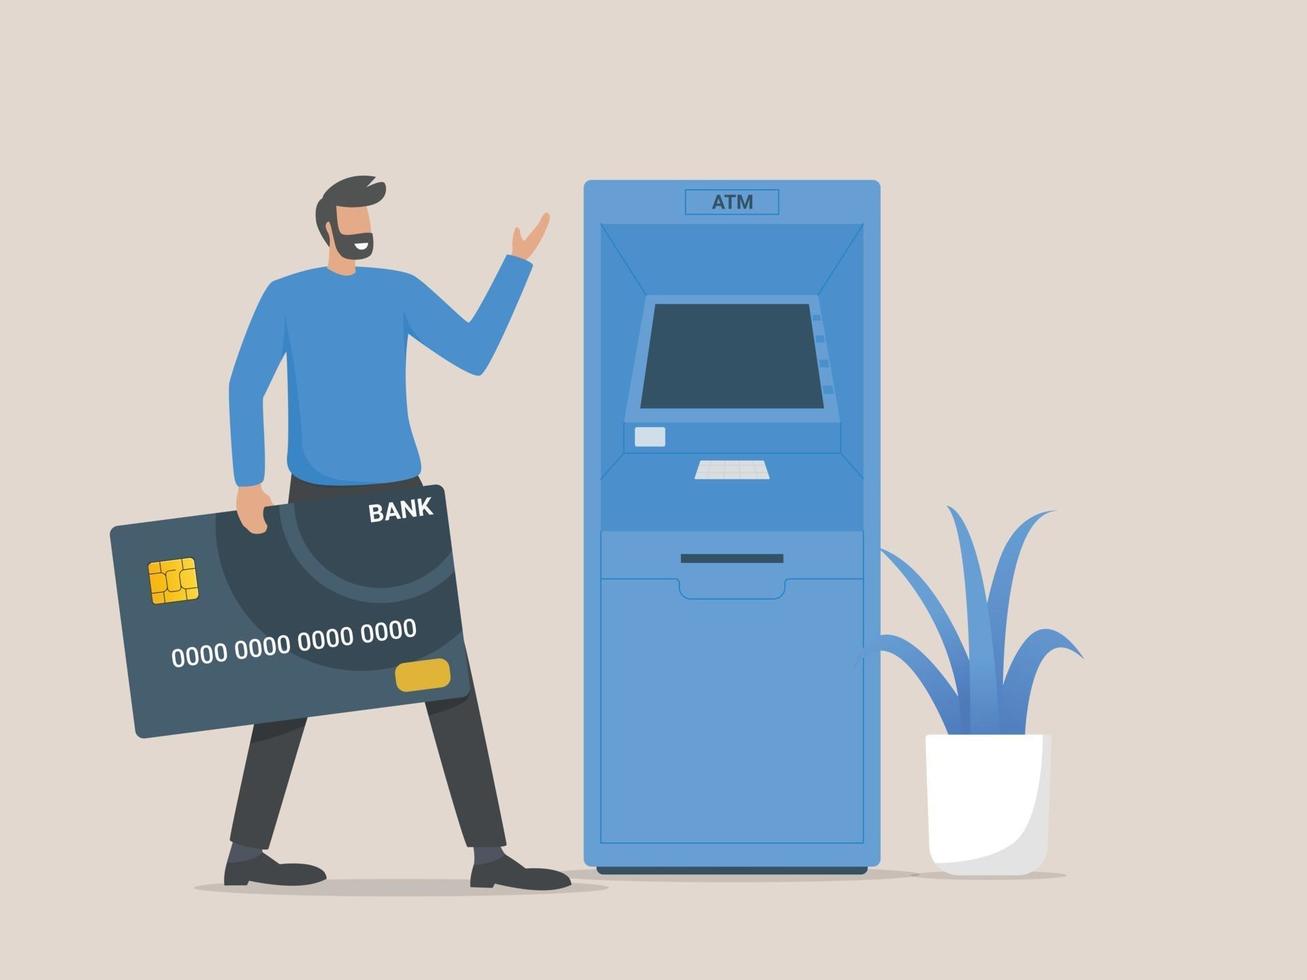 cliente homem parado perto da máquina ATM segurando um cartão de crédito vetor